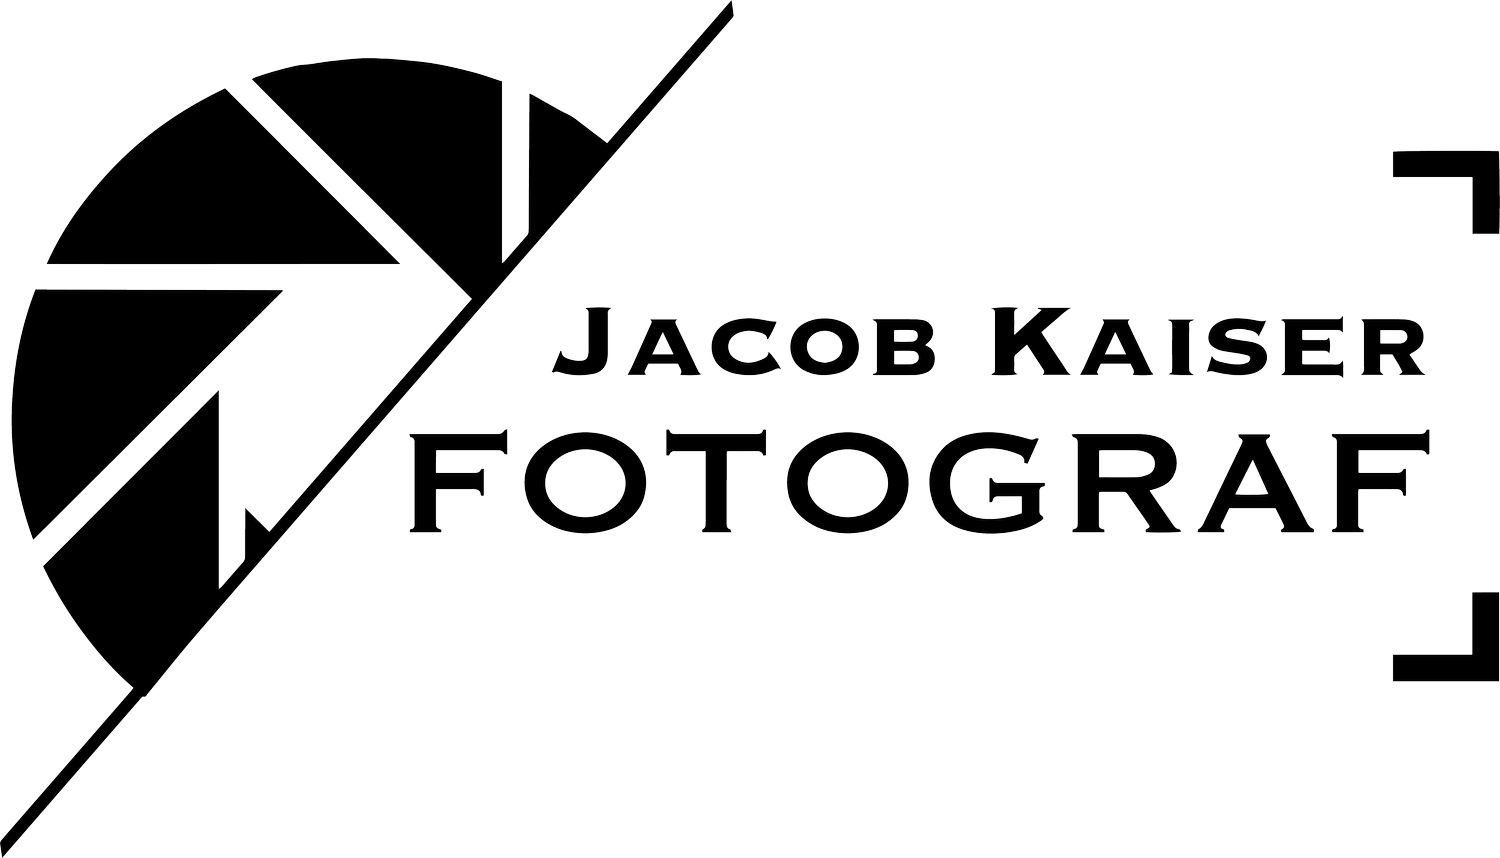 Jacob Kaiser - Fotograf